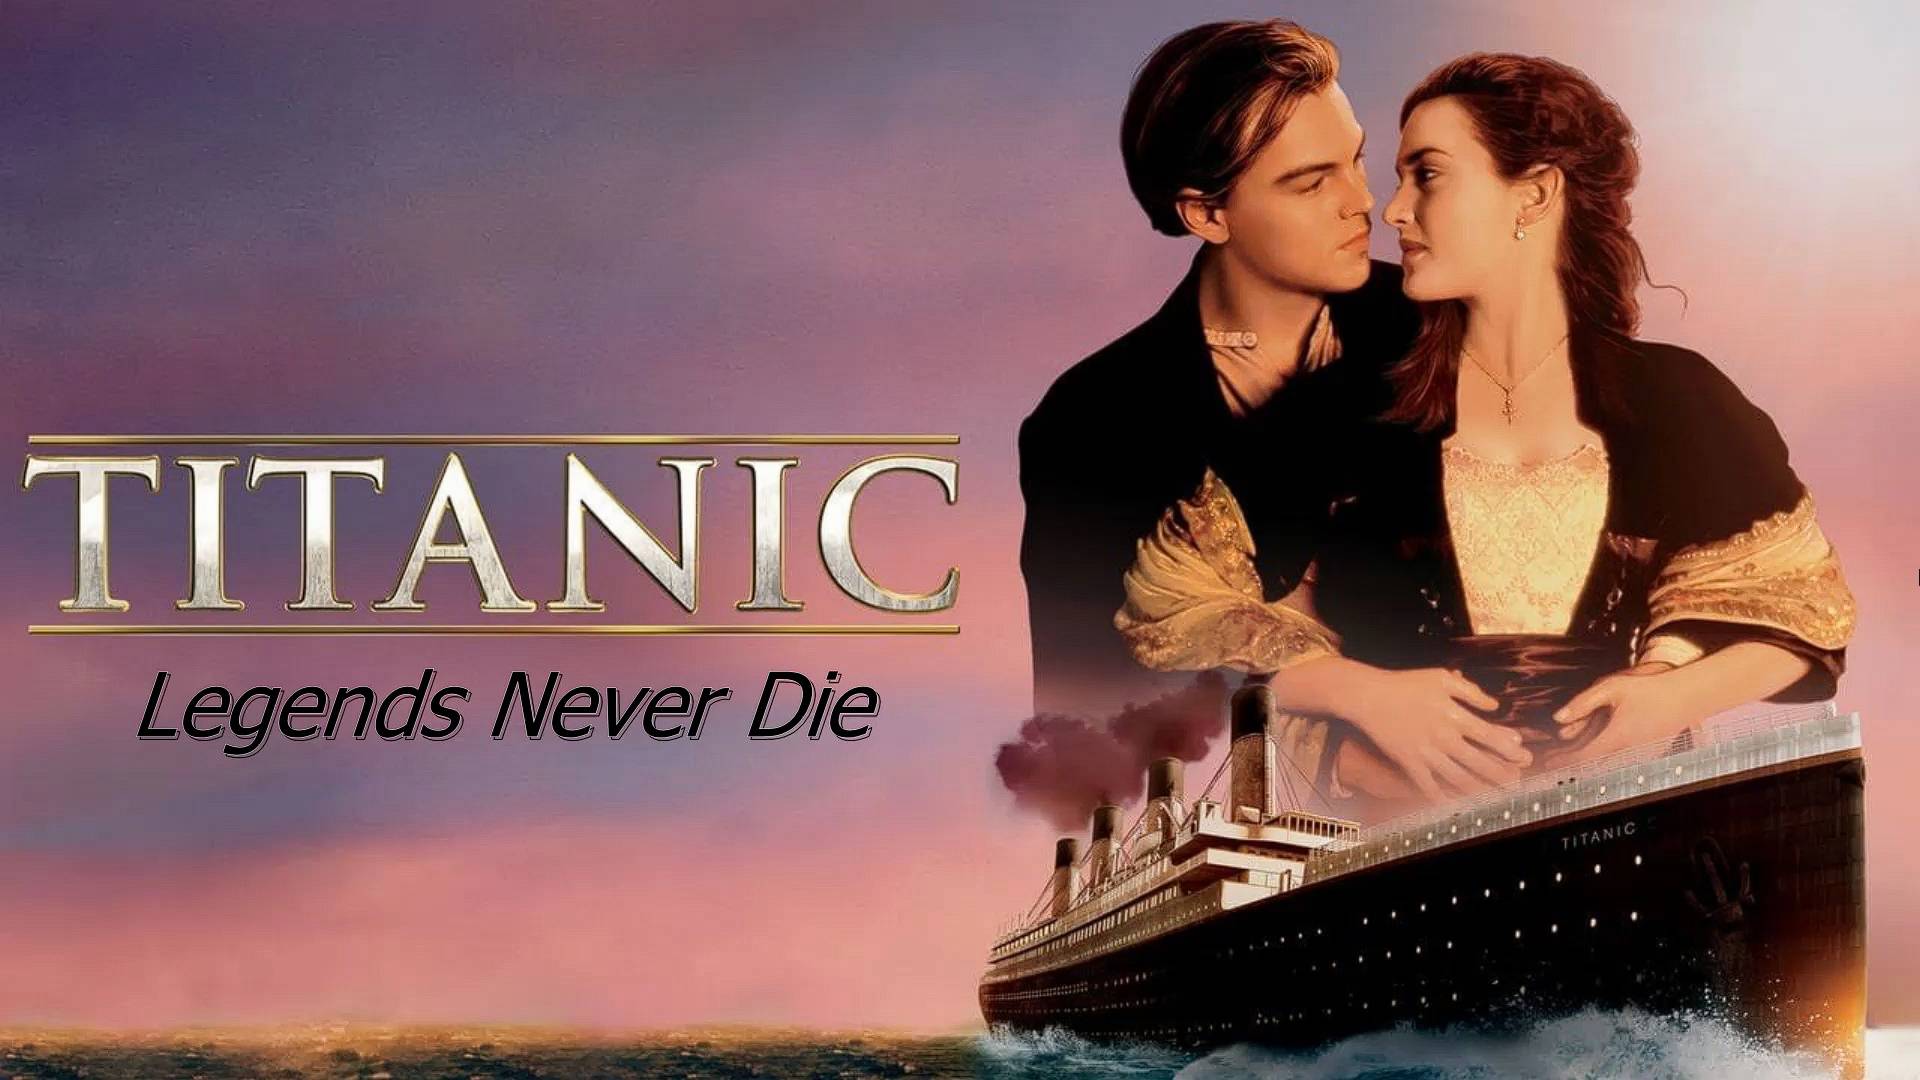 Клип на фильм Титаник 1997 (Legends never die)